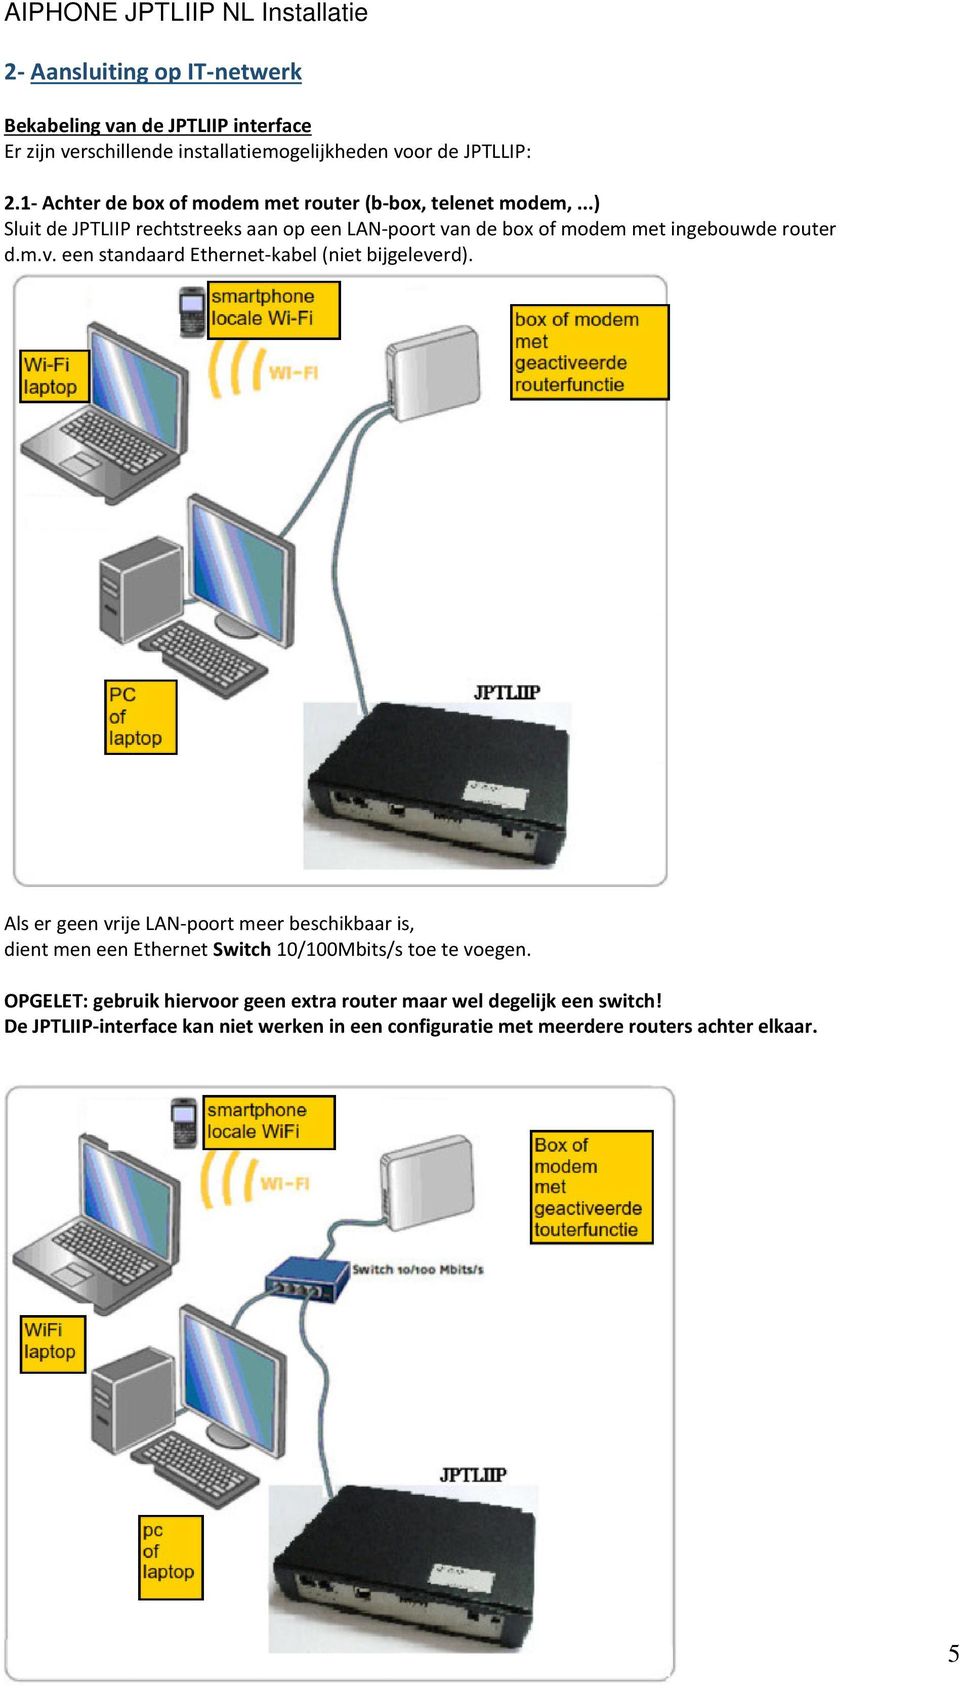 ..) Sluit de JPTLIIP rechtstreeks aan op een LAN-poort van de box of modem met ingebouwde router d.m.v. een standaard Ethernet-kabel (niet bijgeleverd).